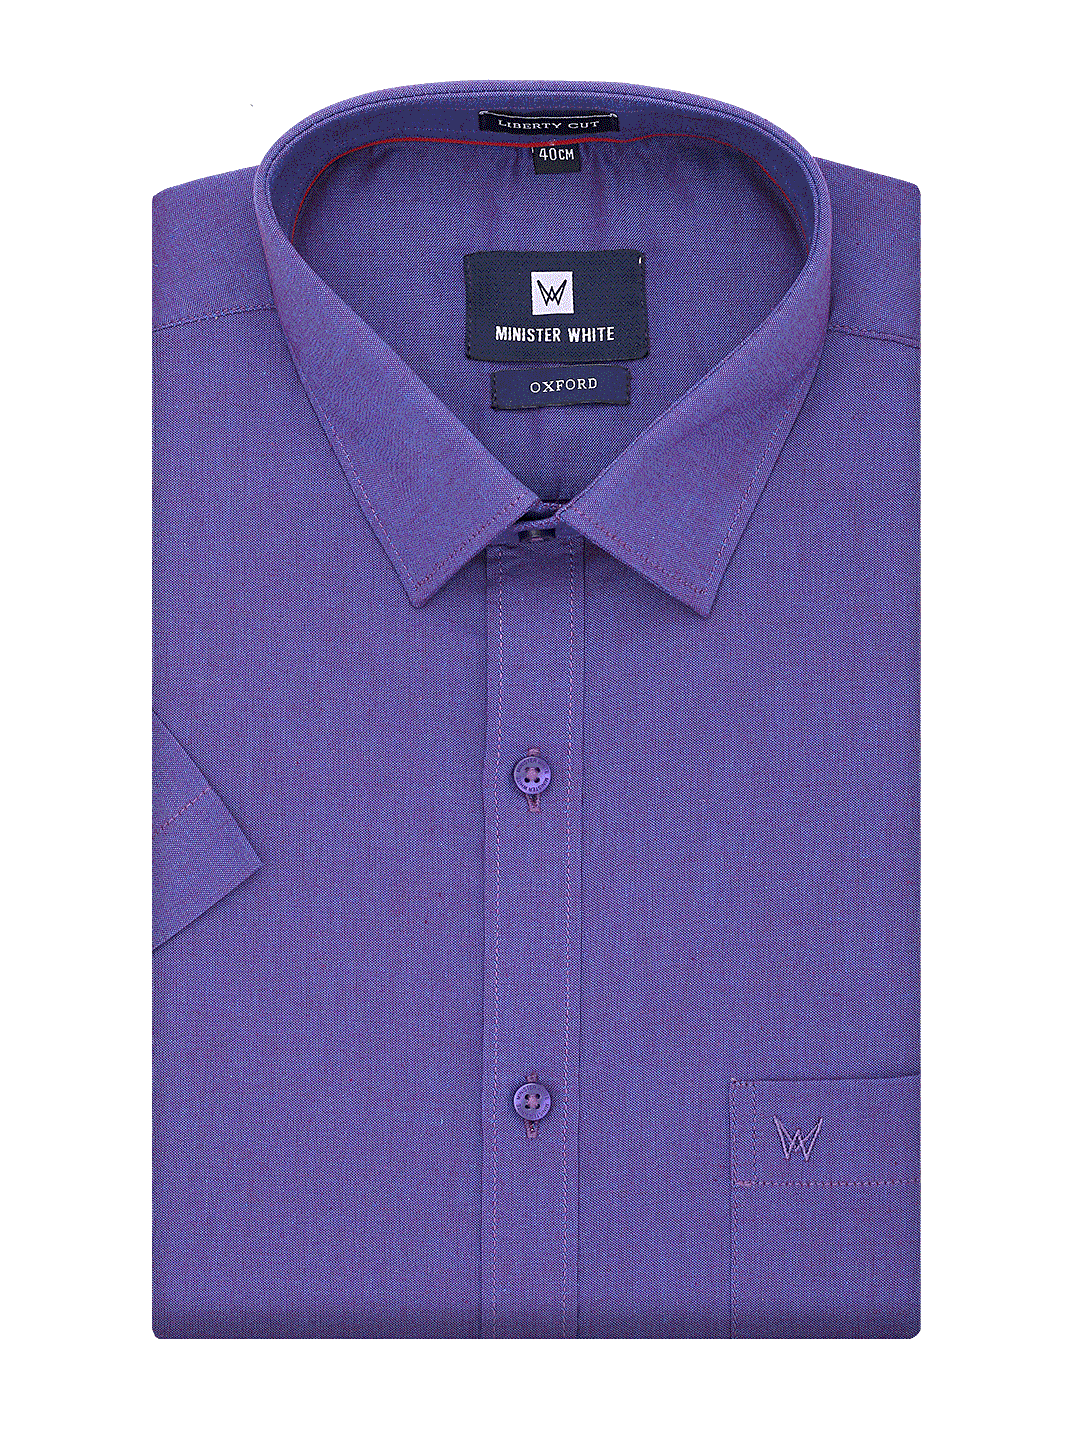 Mens Cotton Regular Fit Purple Colour Shirt Oxford